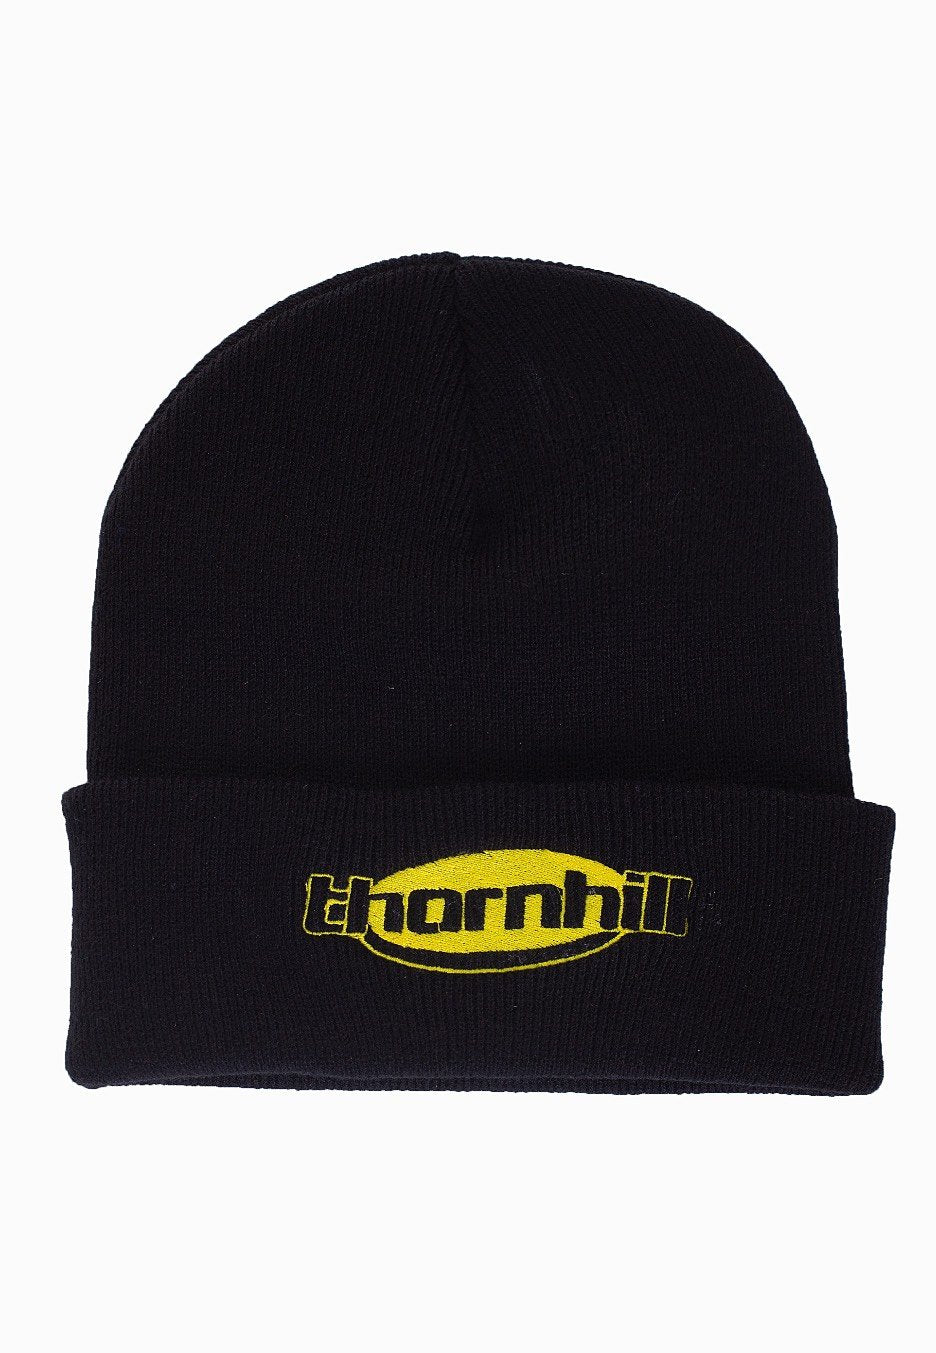 Thornhill - Thornhill Logo - Beanie